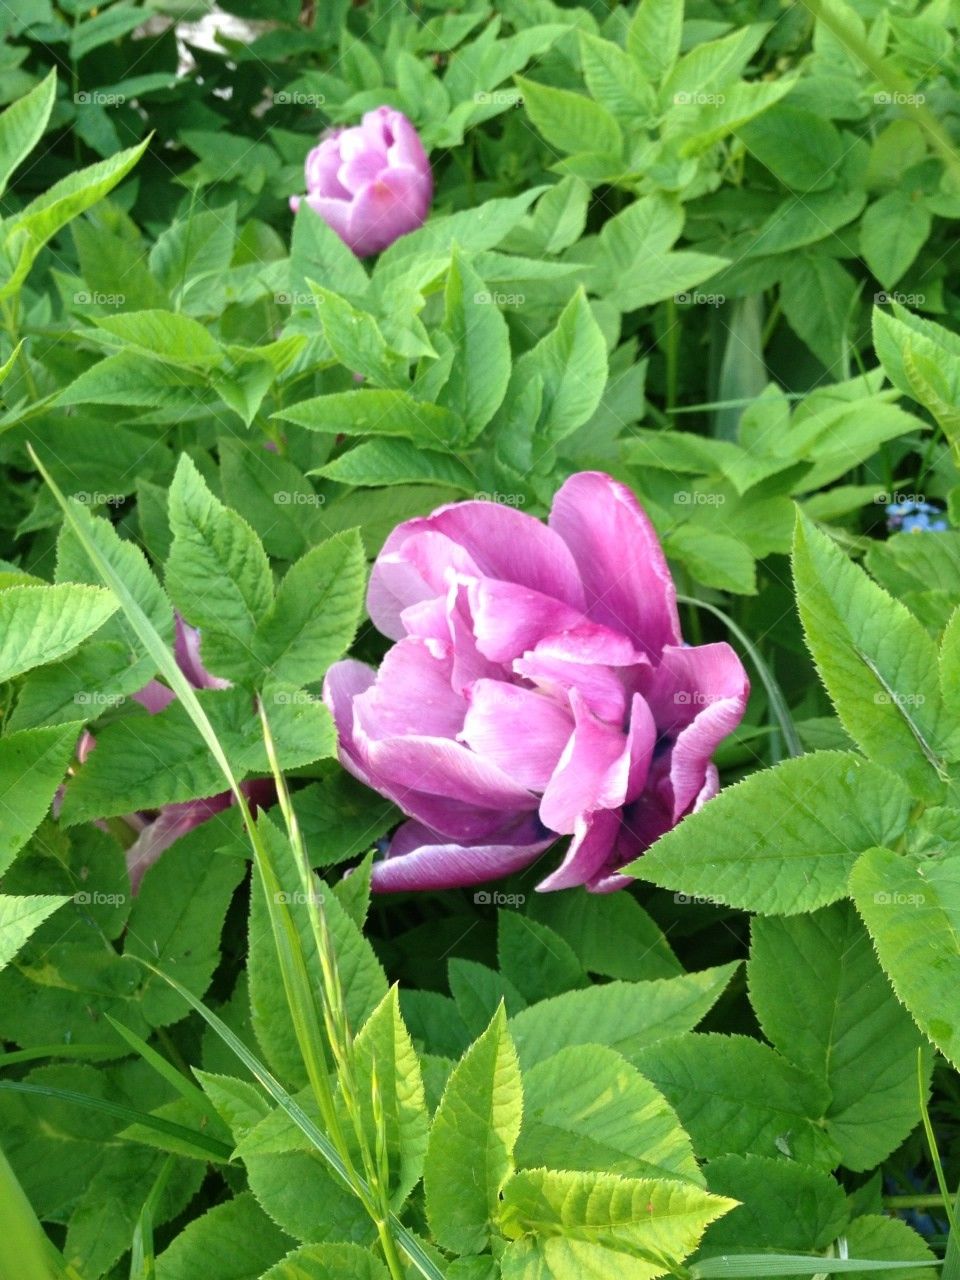 sweden pink flower tulip by jenwic